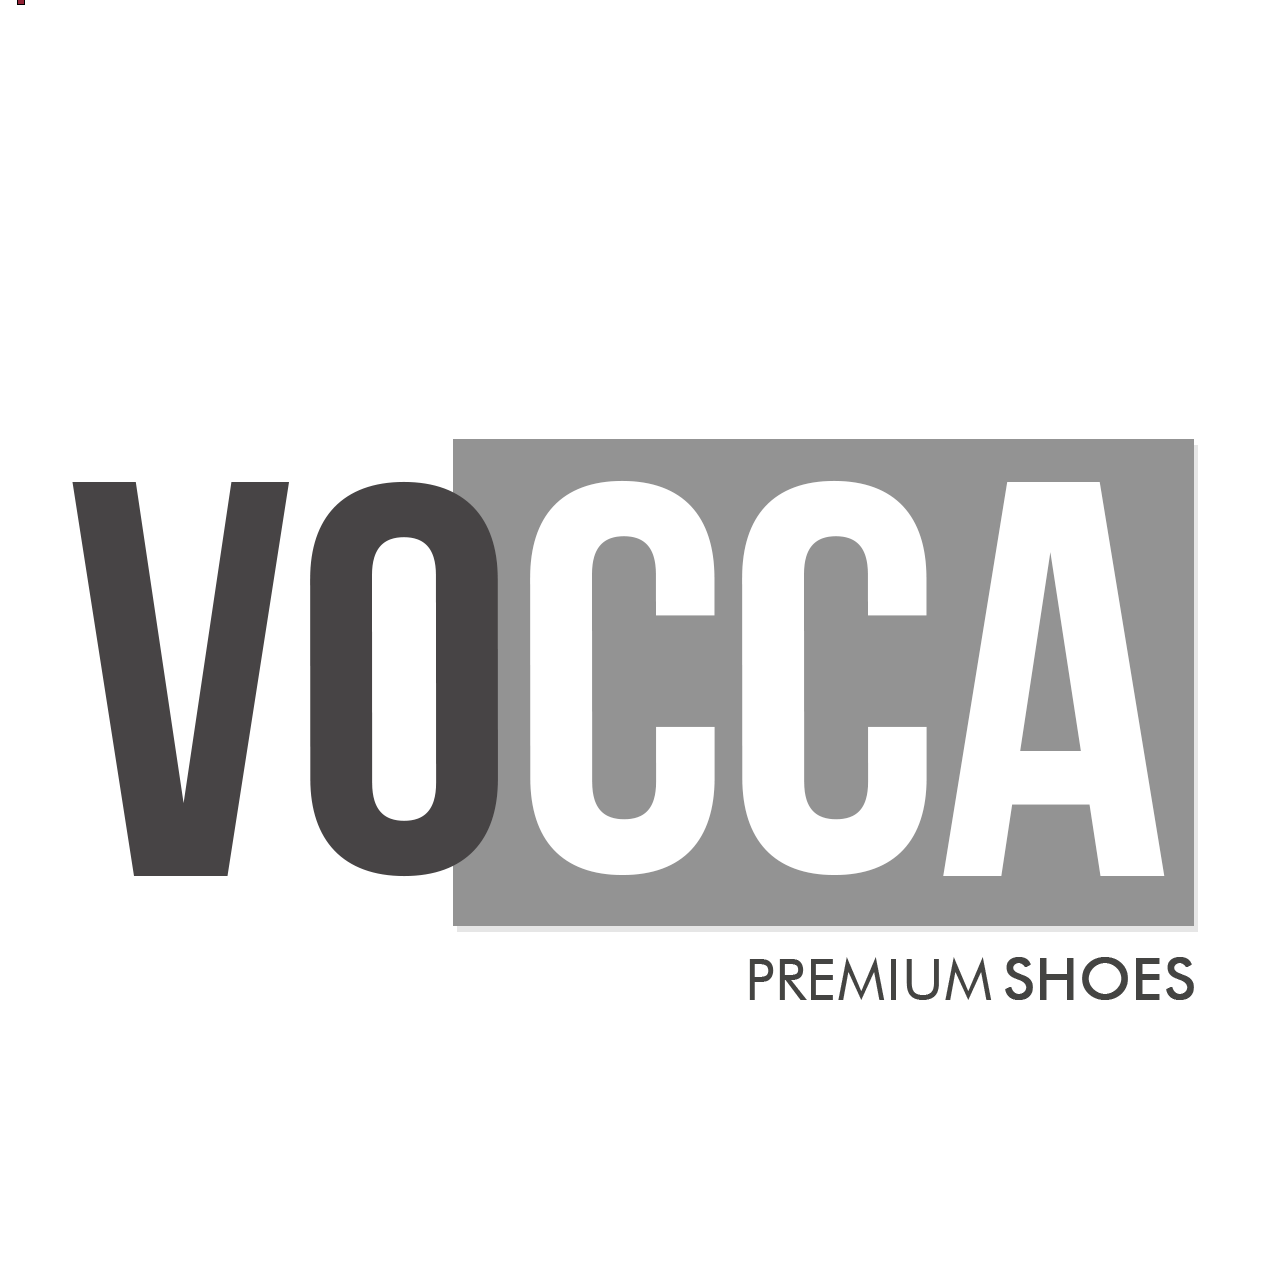 VOCCA